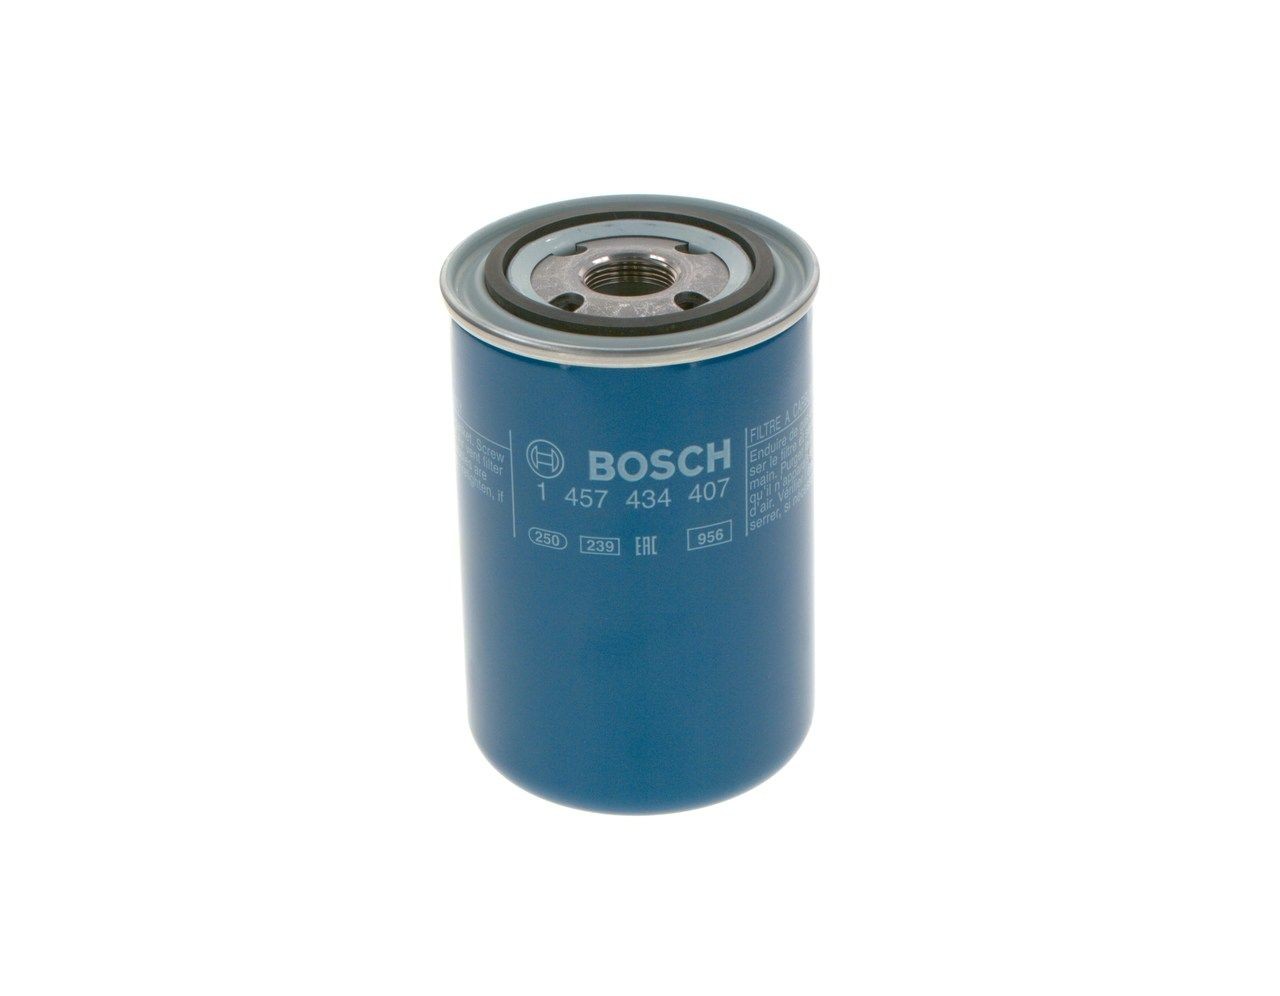 BOSCH Fuel filter 1 457 434 407